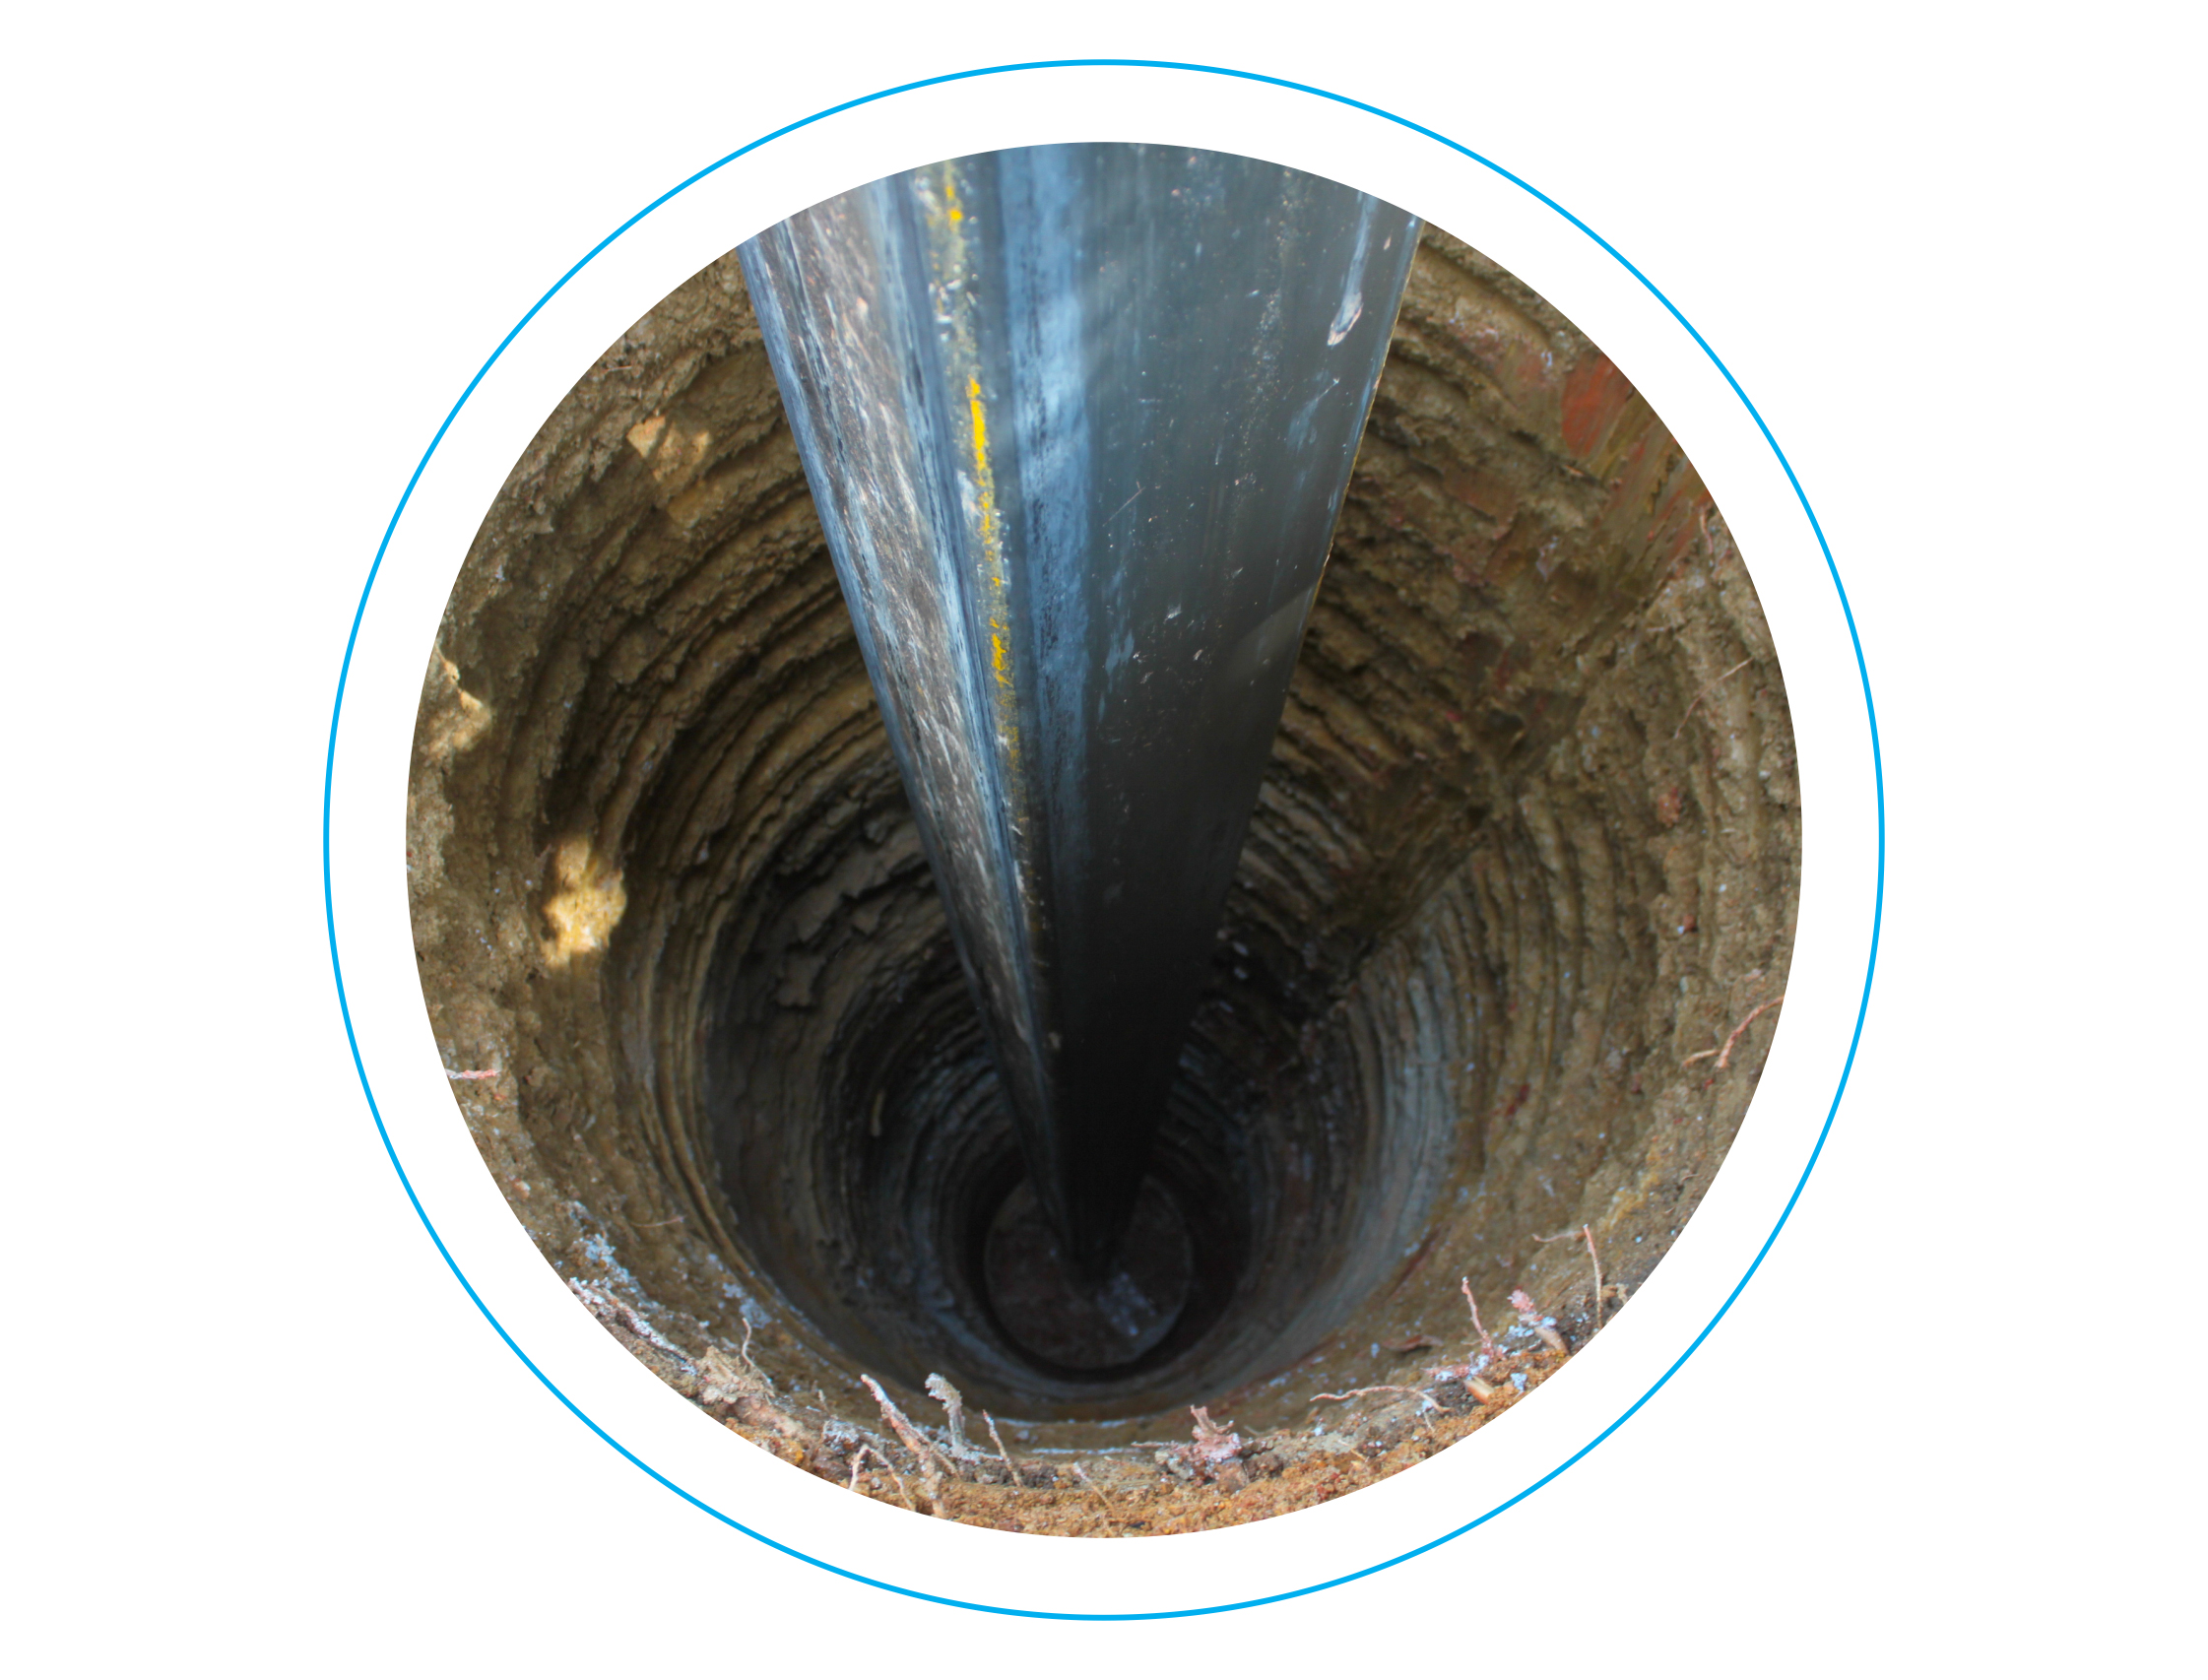 <p>Para garantir a qualidade da água, bem como aumentar a vida útil dos poços, é fundamental uma manutenção adequada realizada por profissionais capacitados.</p>

<p> </p>

<p>A HECK POÇOS executa manutenção preventiva e corretiva do seu poço artesiano, retiramos, instalamos e consertamos sua moto bomba submersa com segurança, integridade e rapidez.</p>
